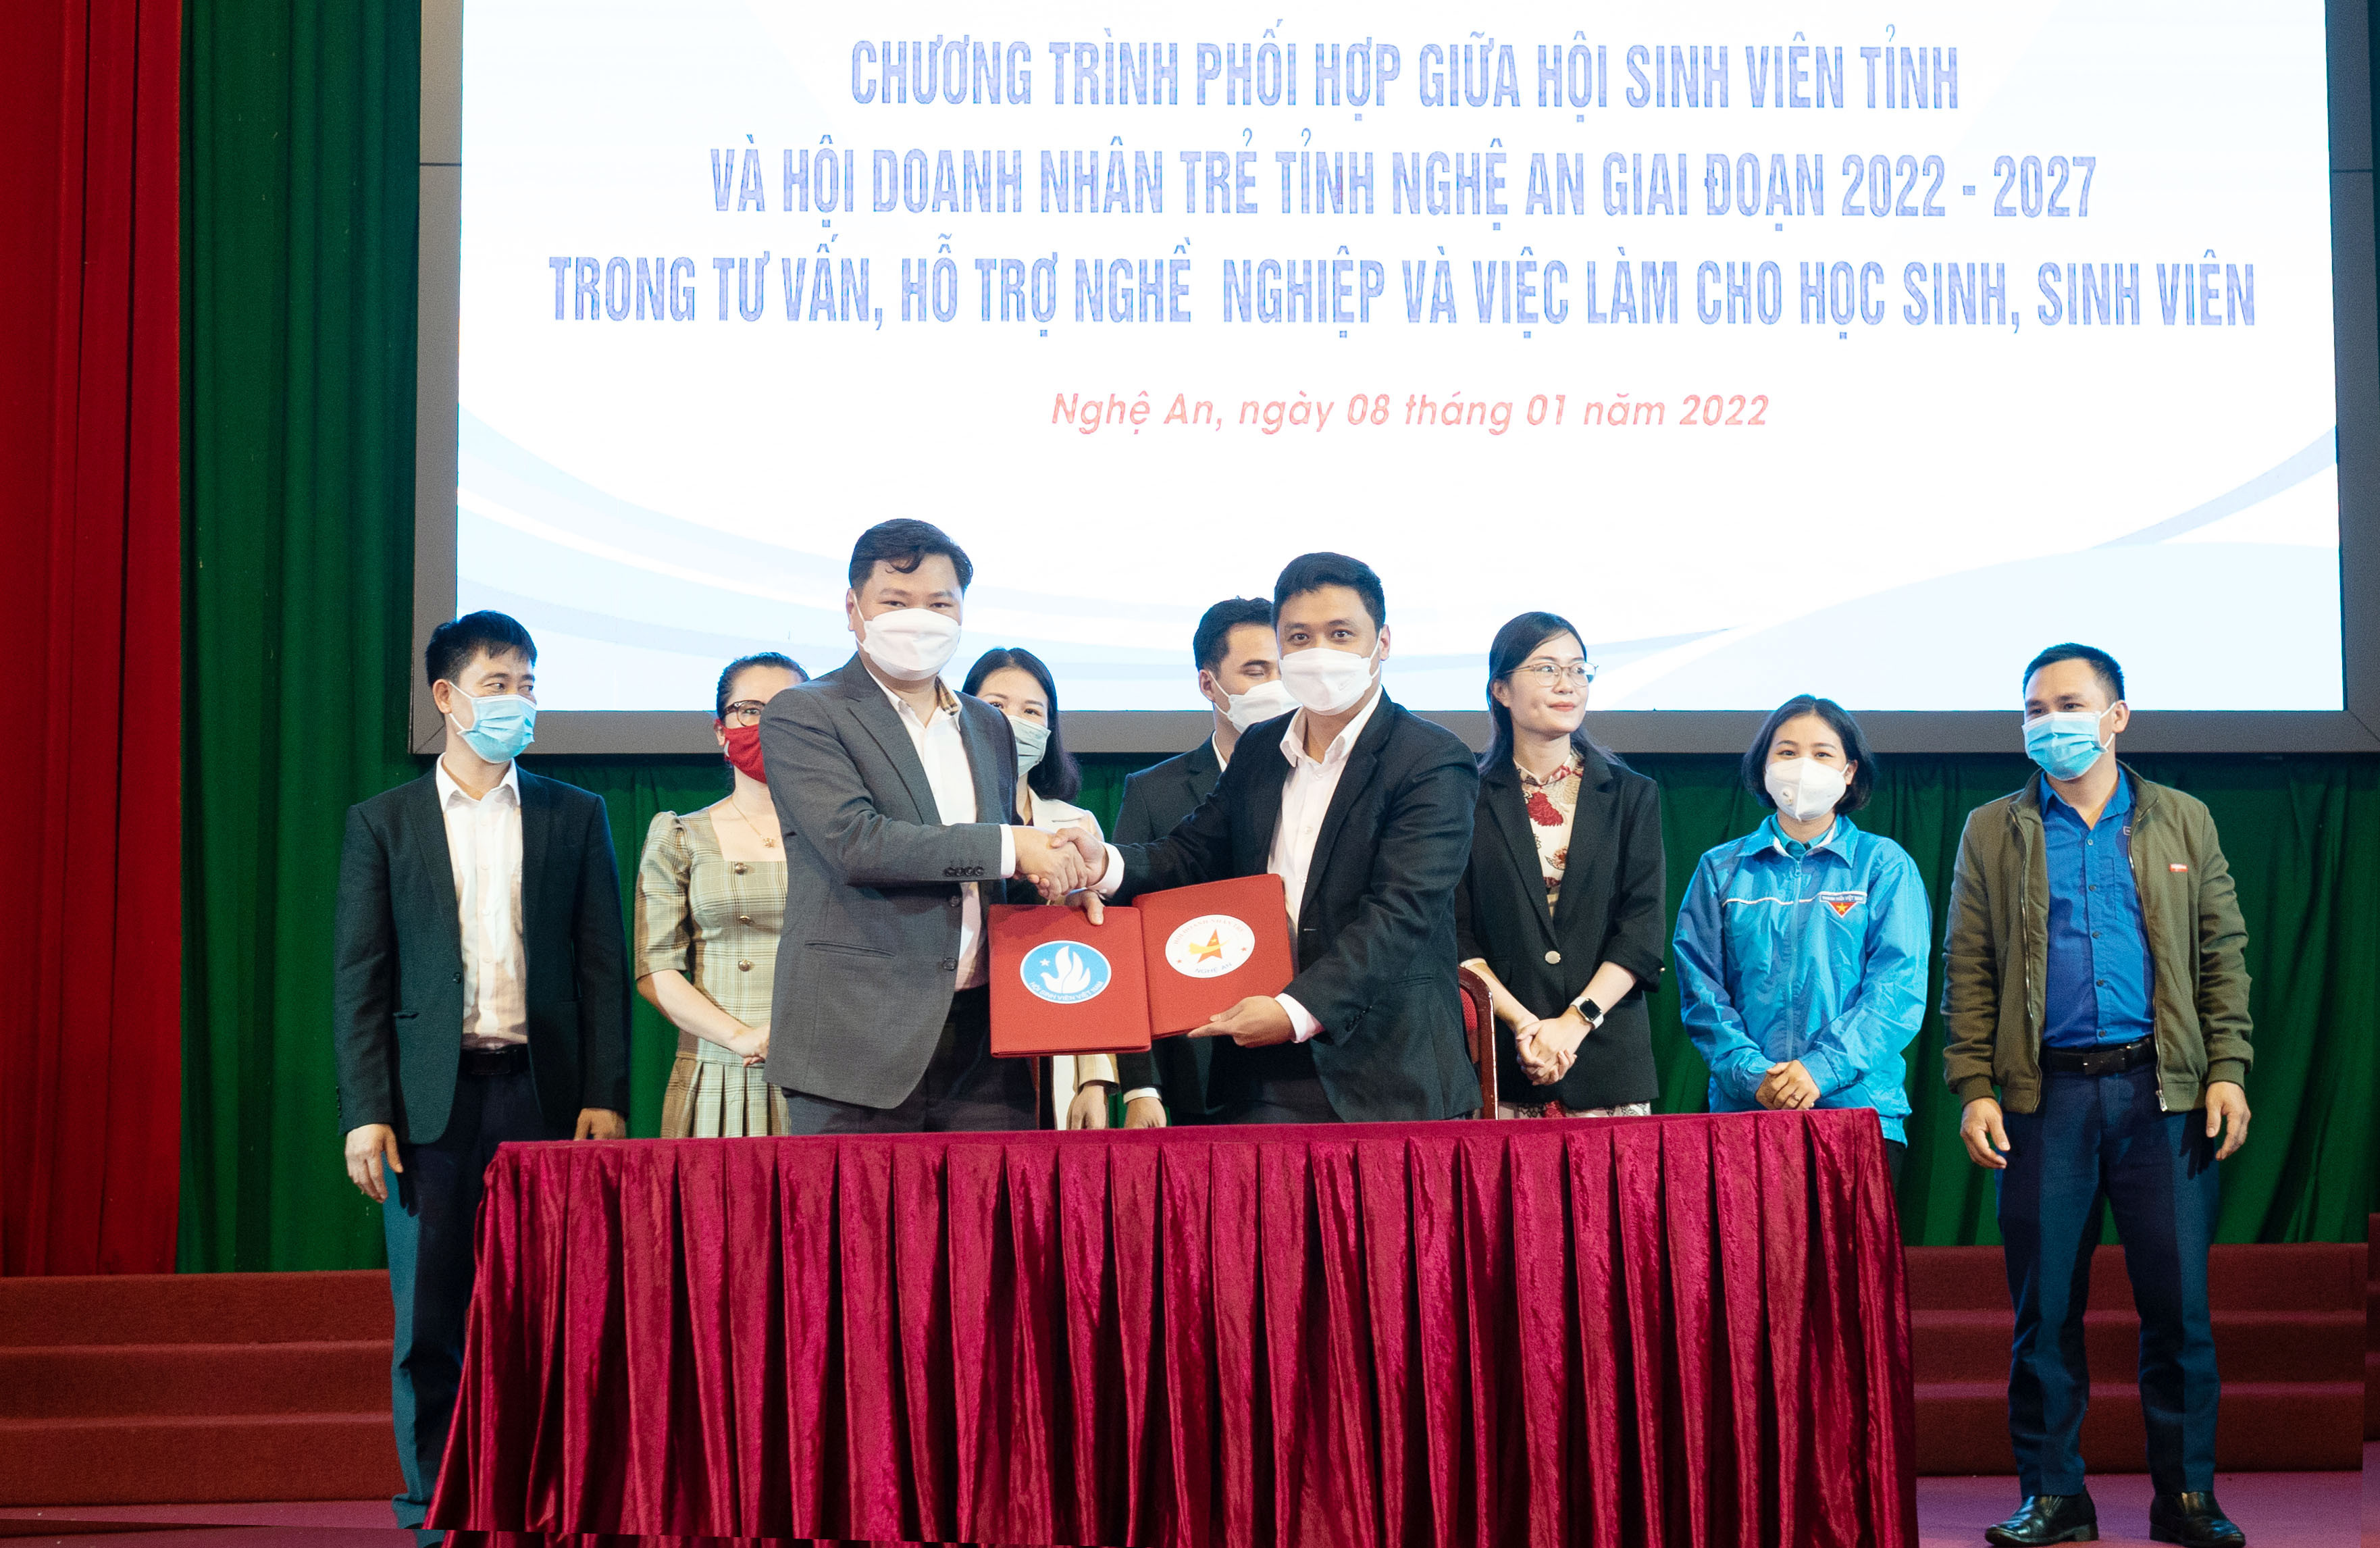 Lễ ký kết chương trình phối hợp giữa Hội sinh viên tỉnh Nghệ An và Hội doanh nghiệp trẻ. Ảnh: MH